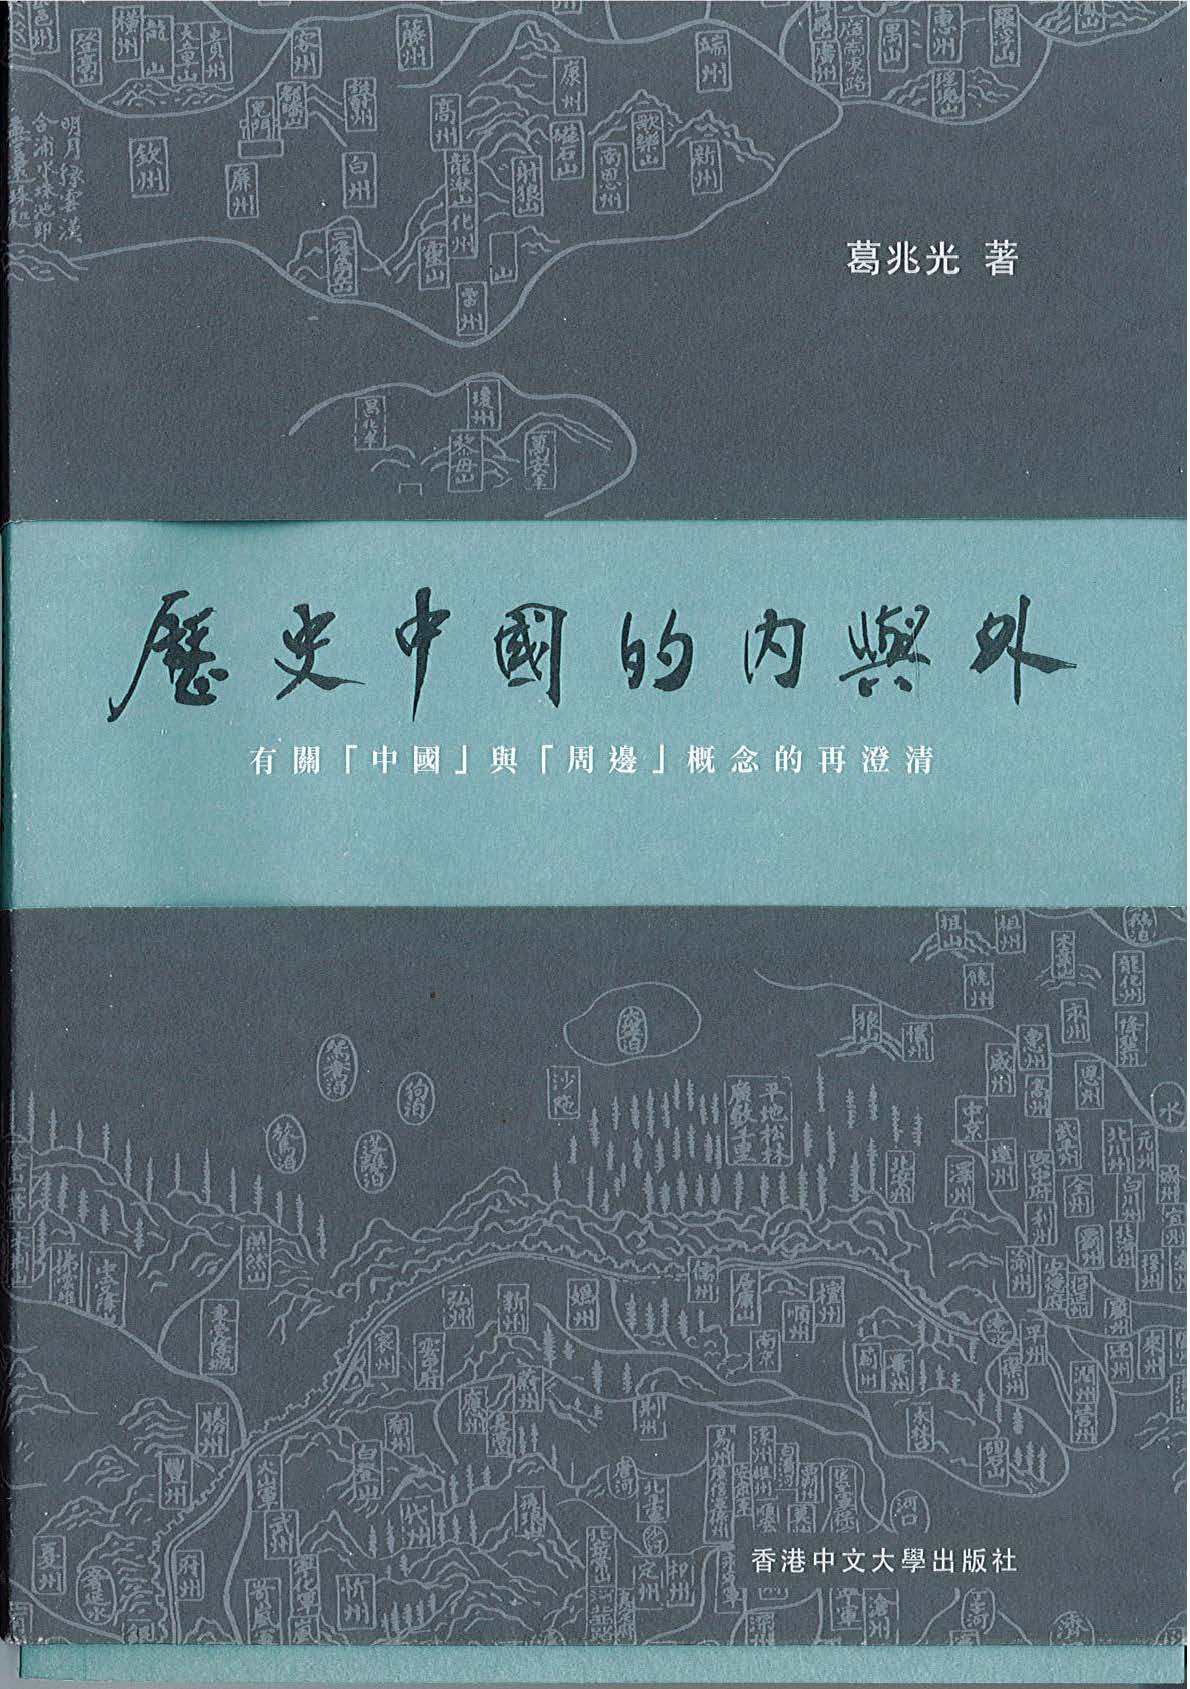 葛兆光教授著作《历史中国的内与外》由香港中文大学出版社出版-复旦 